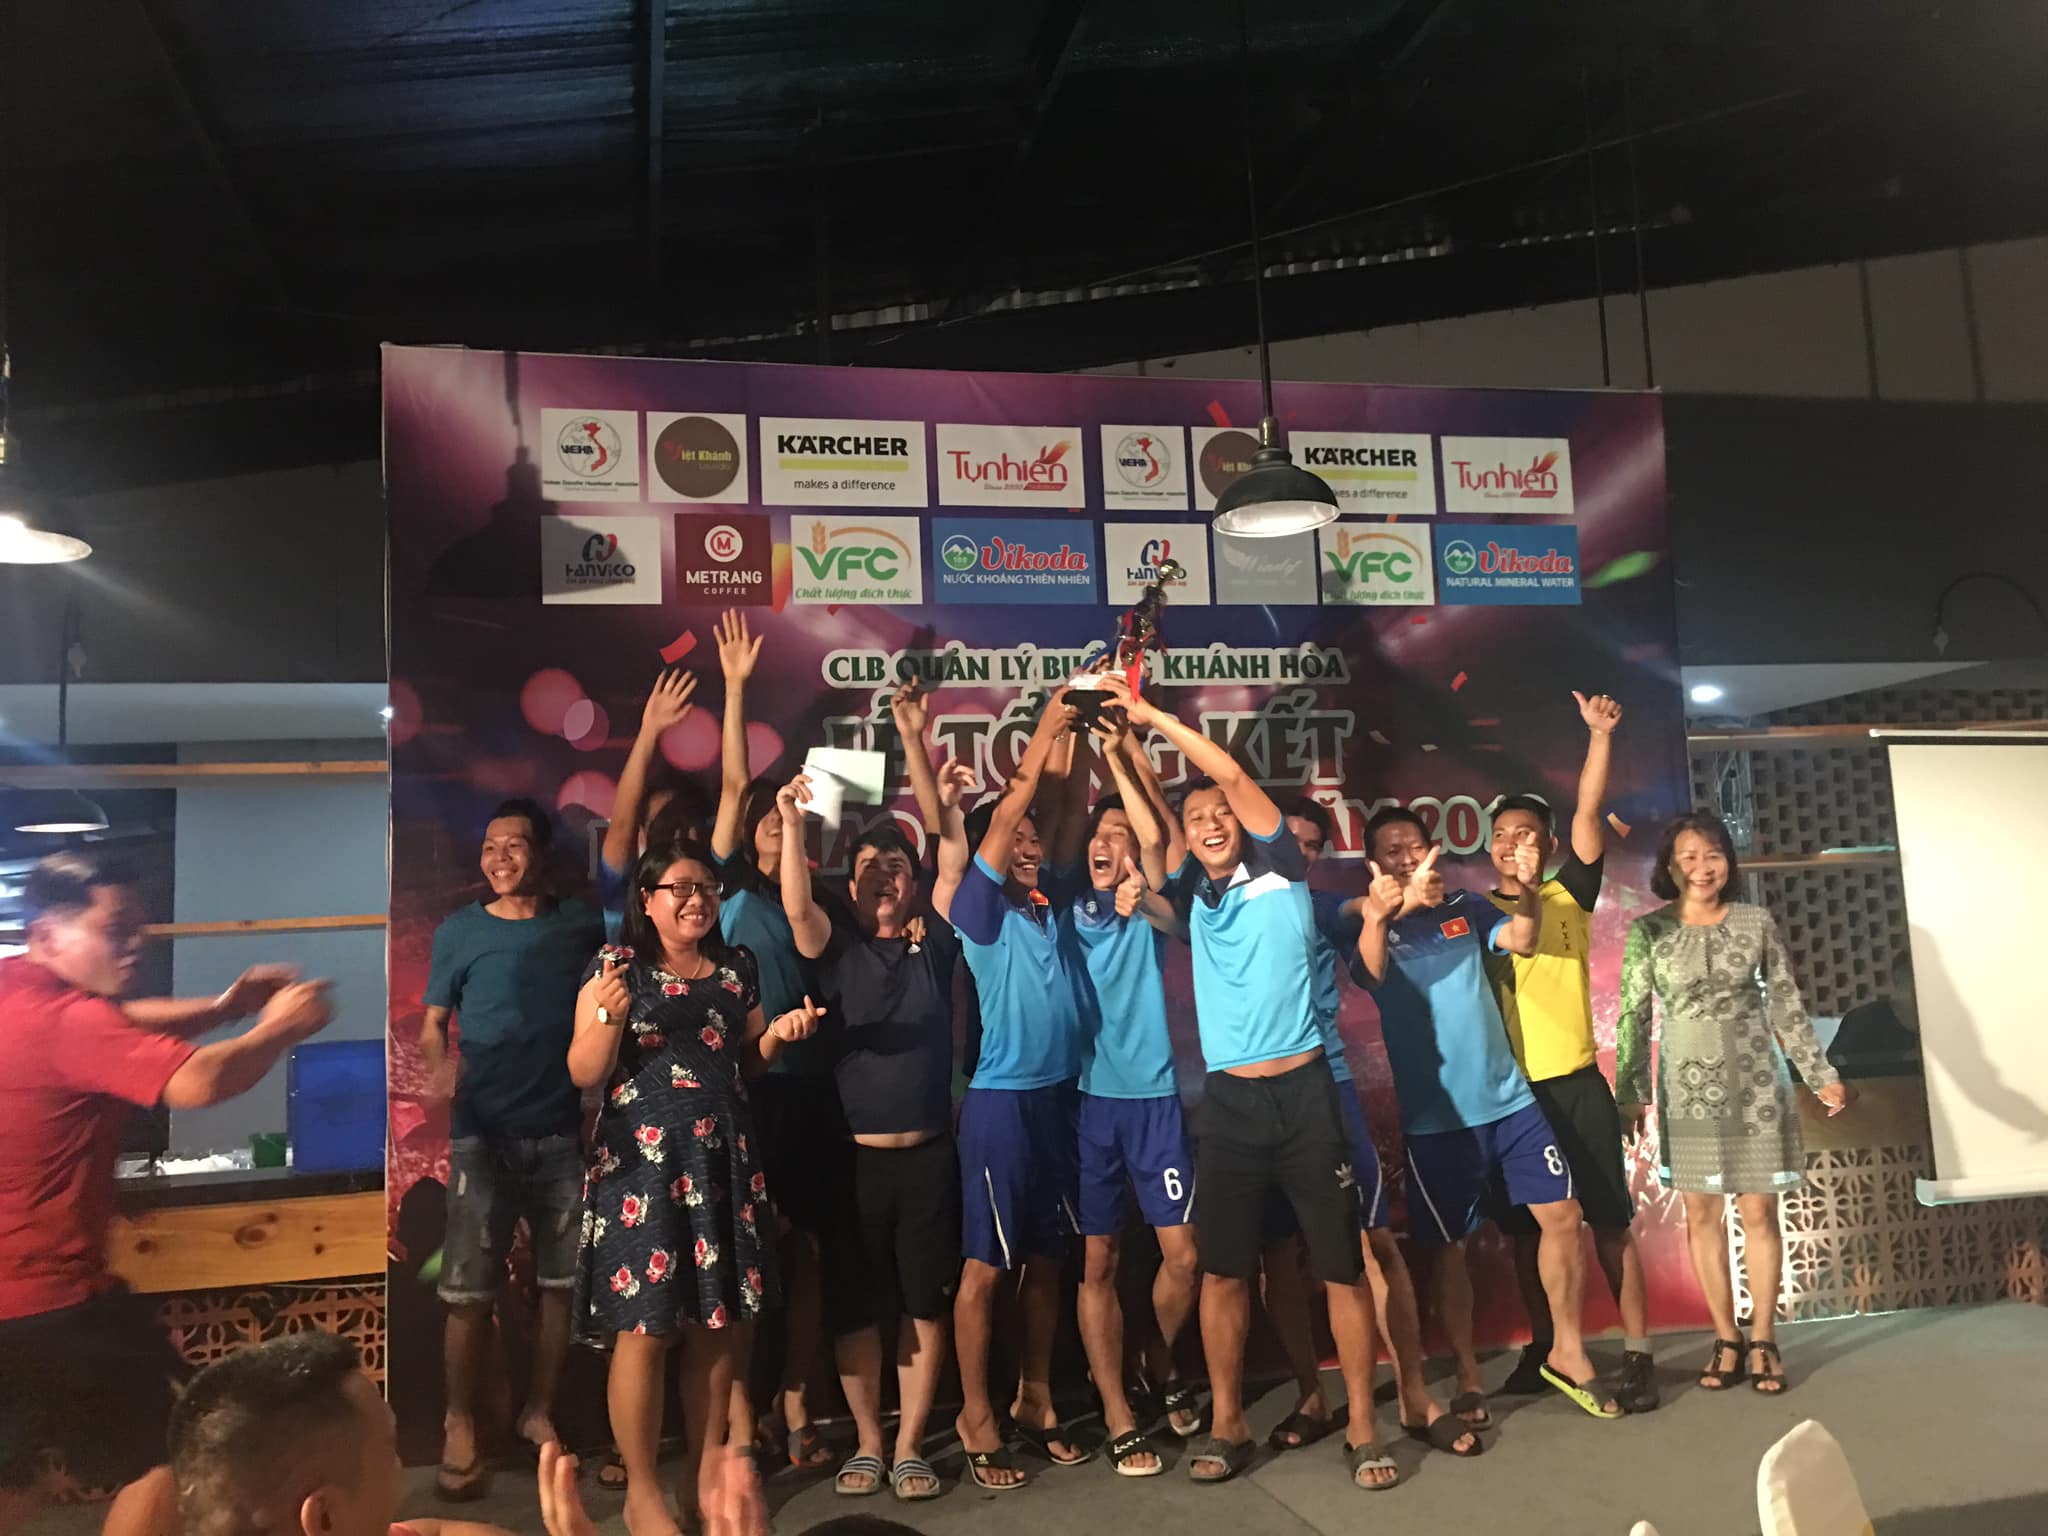 Giải bóng đá và Chương trình thiện nguyện CLB Nha Trang - Khánh Hòa 2019